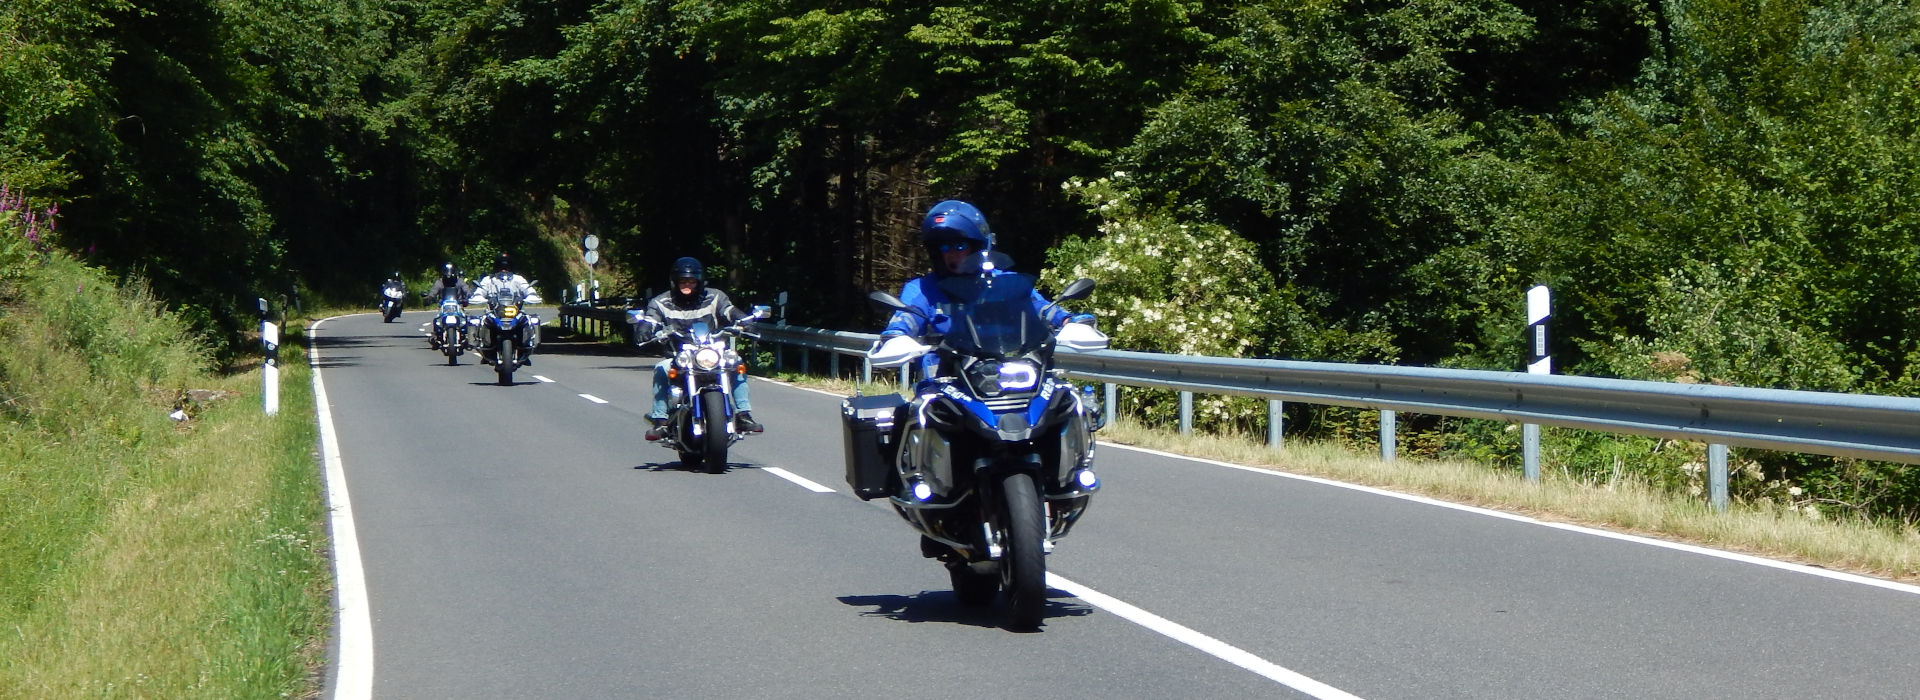 Motorrijbewijspoint Sittard motorrijlessen